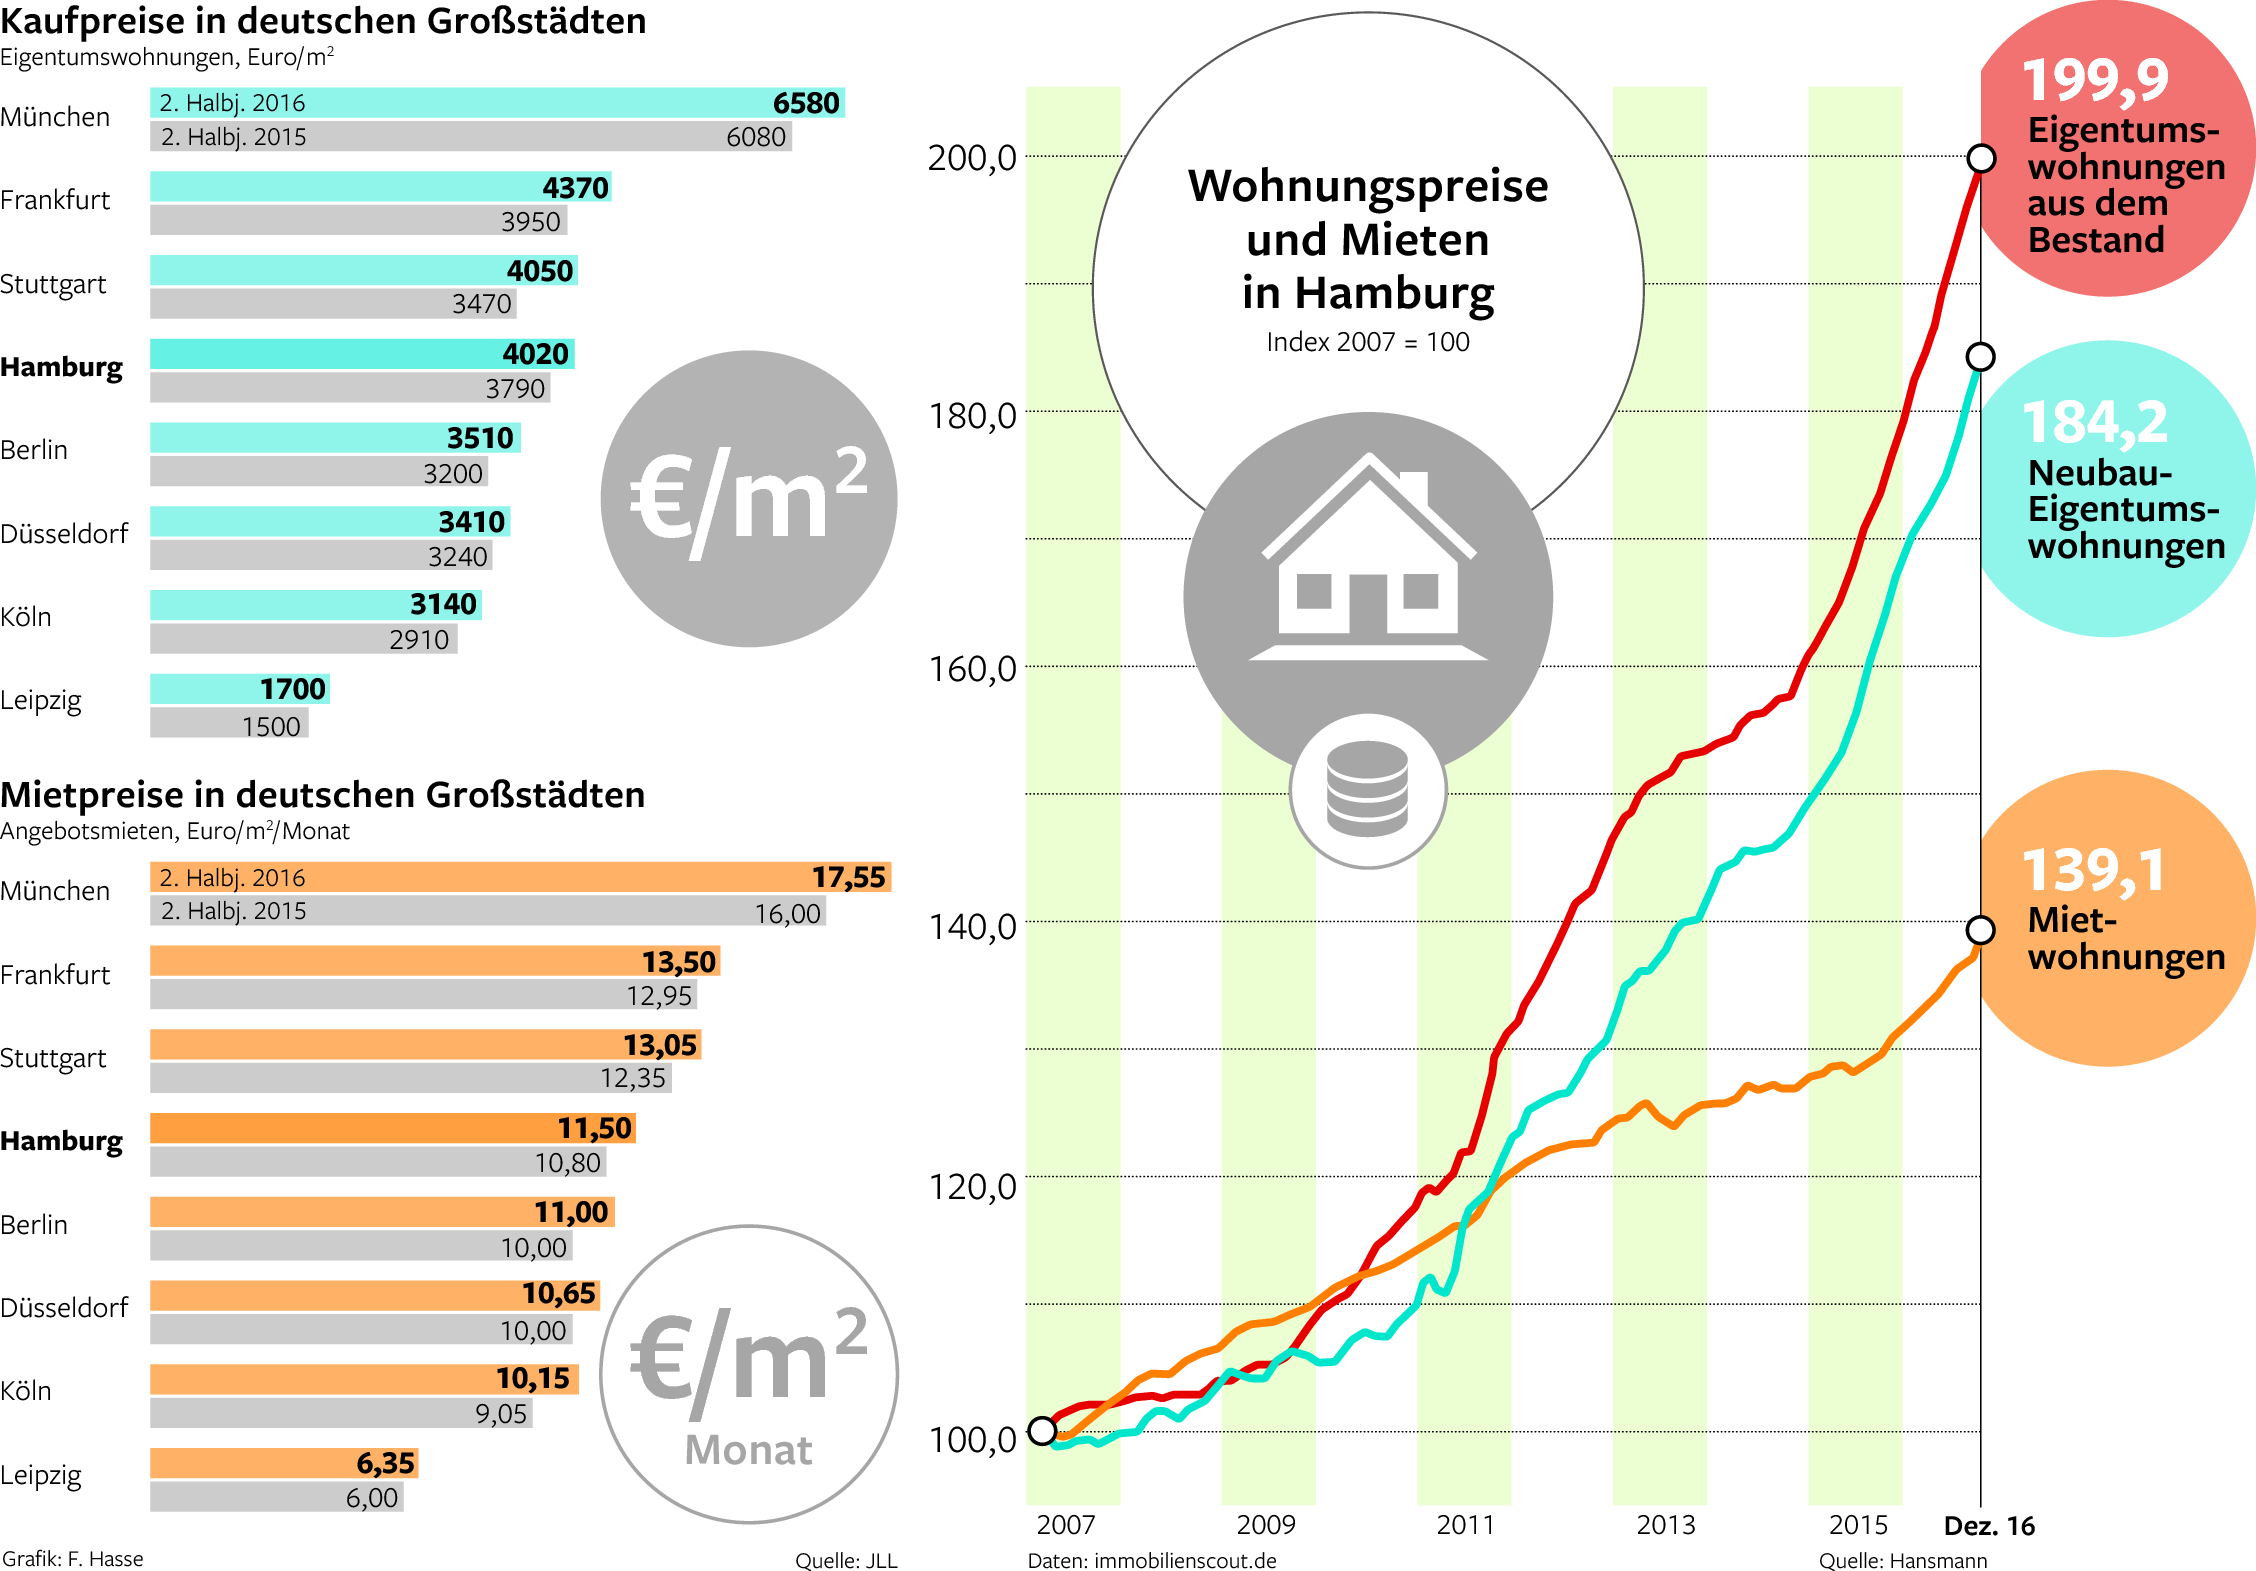 Zunahme singlehaushalte deutschland